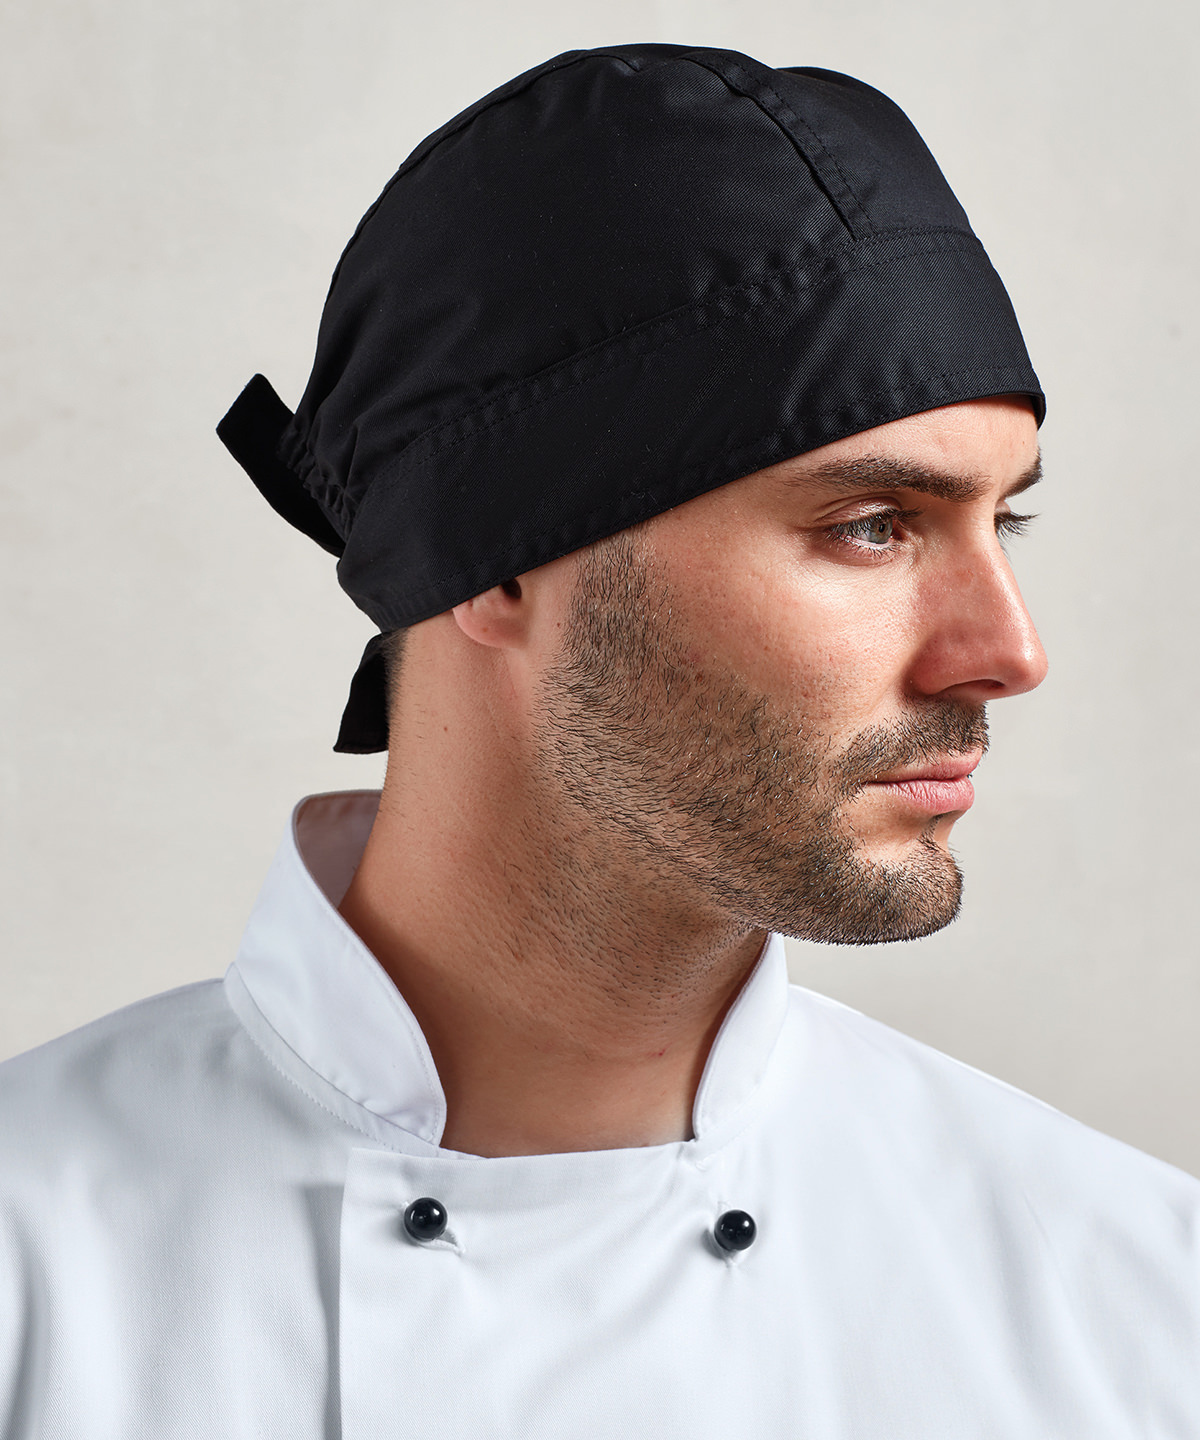 chef's bandana-black-kitchen bandana